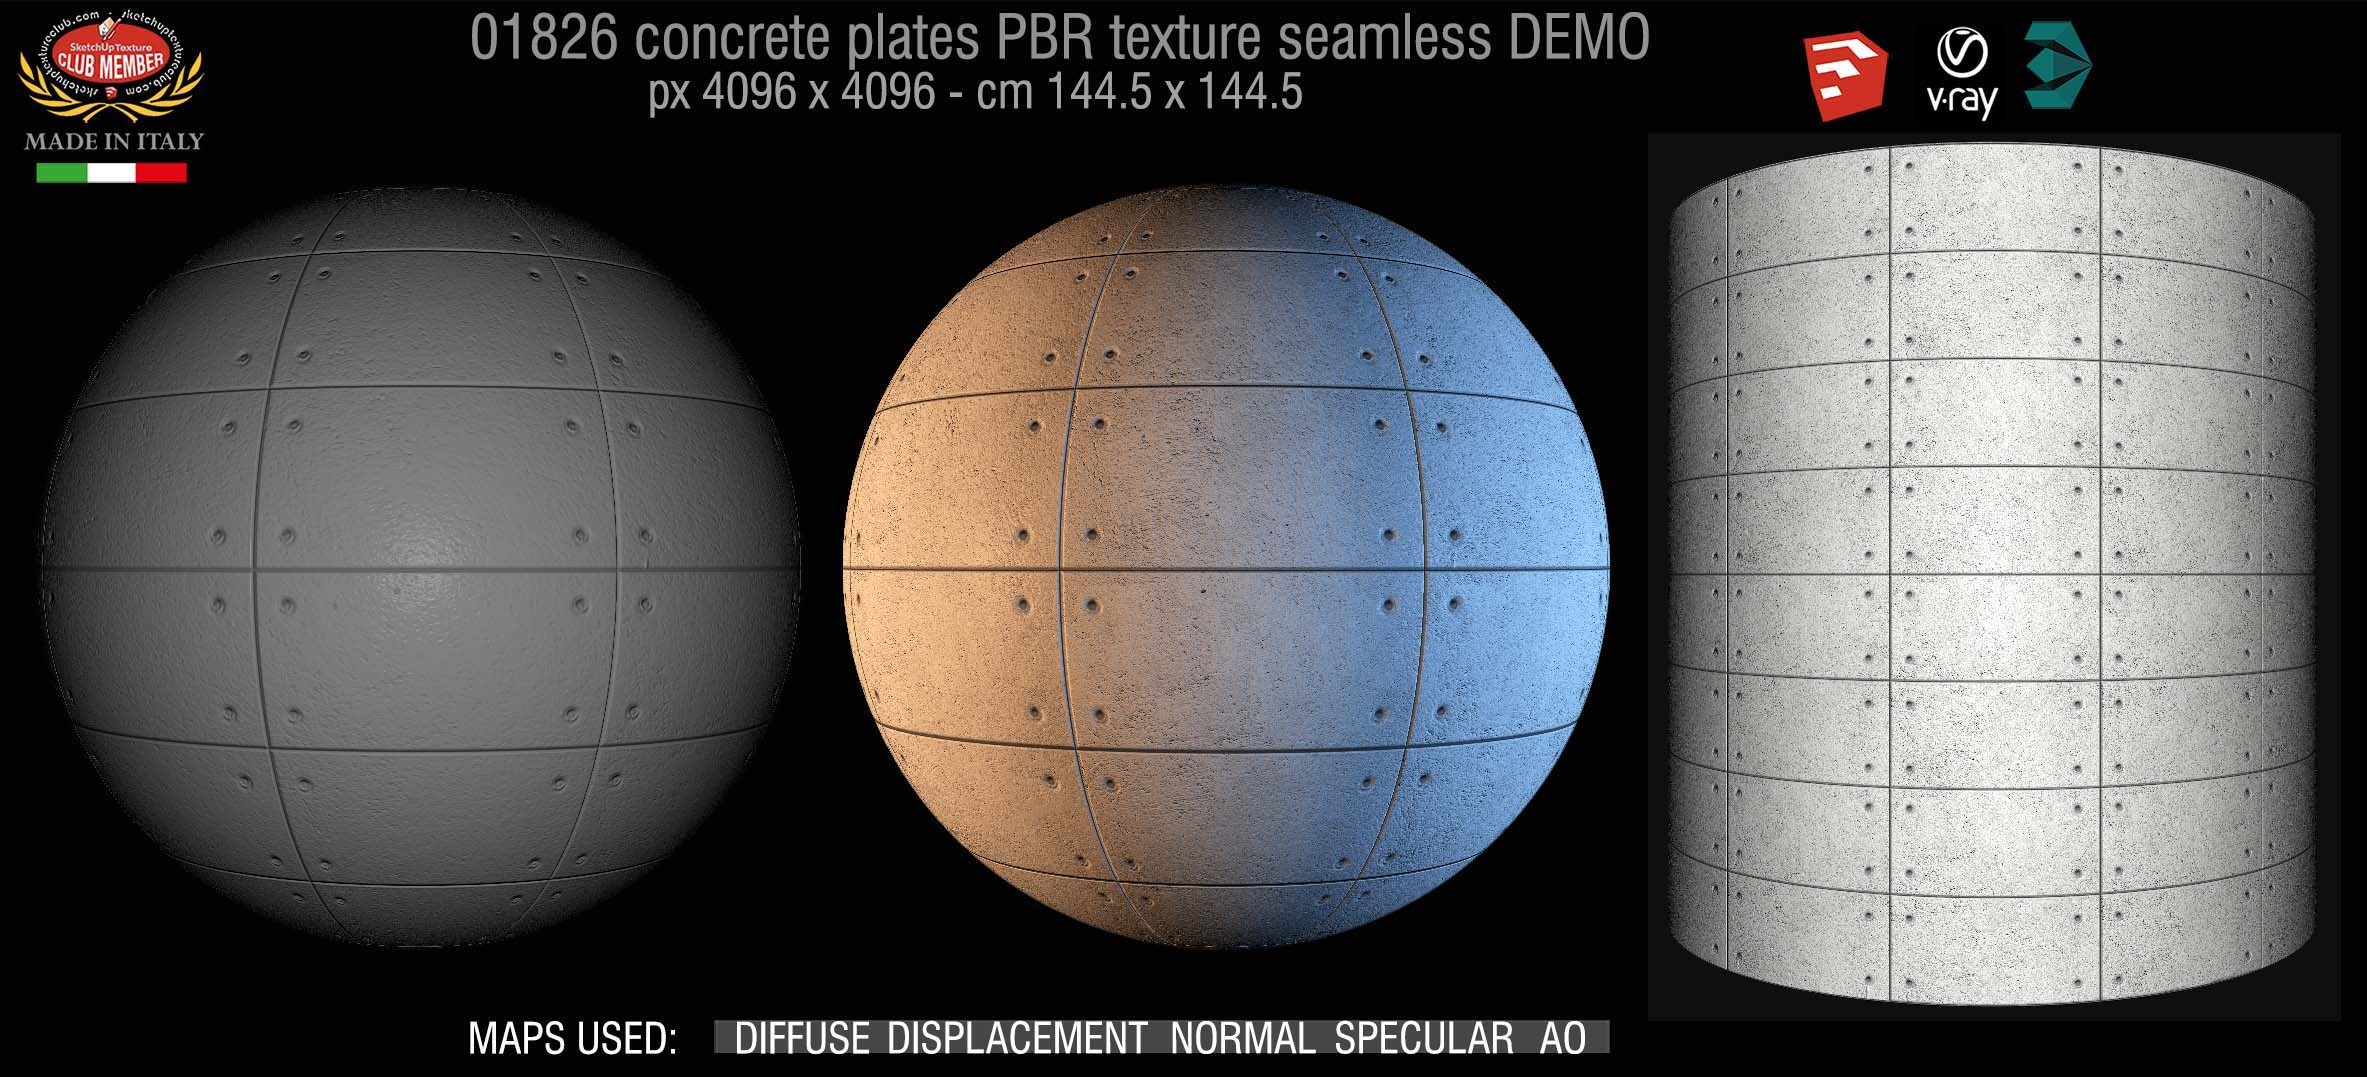 01826 Tadao Ando concrete plates PBR texture seamless DEMO